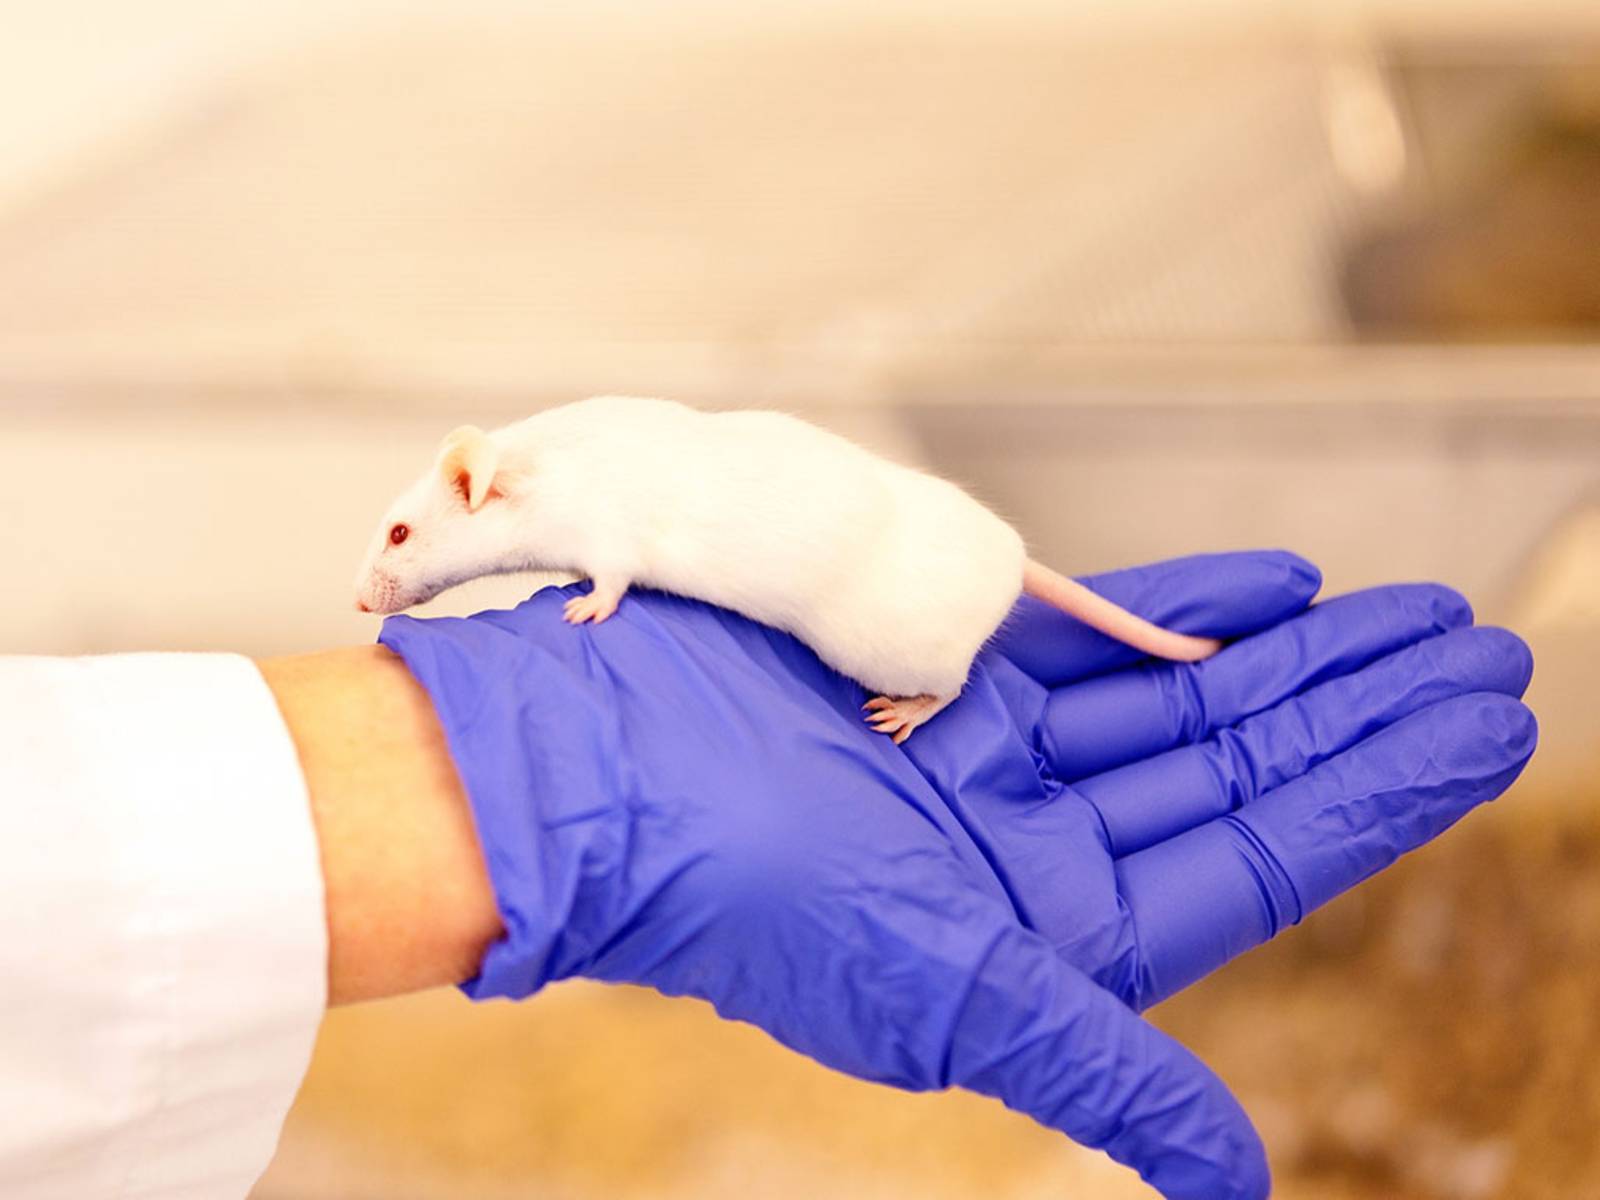 Weiße Ratte auf Hand mit Schutzhandshuh.